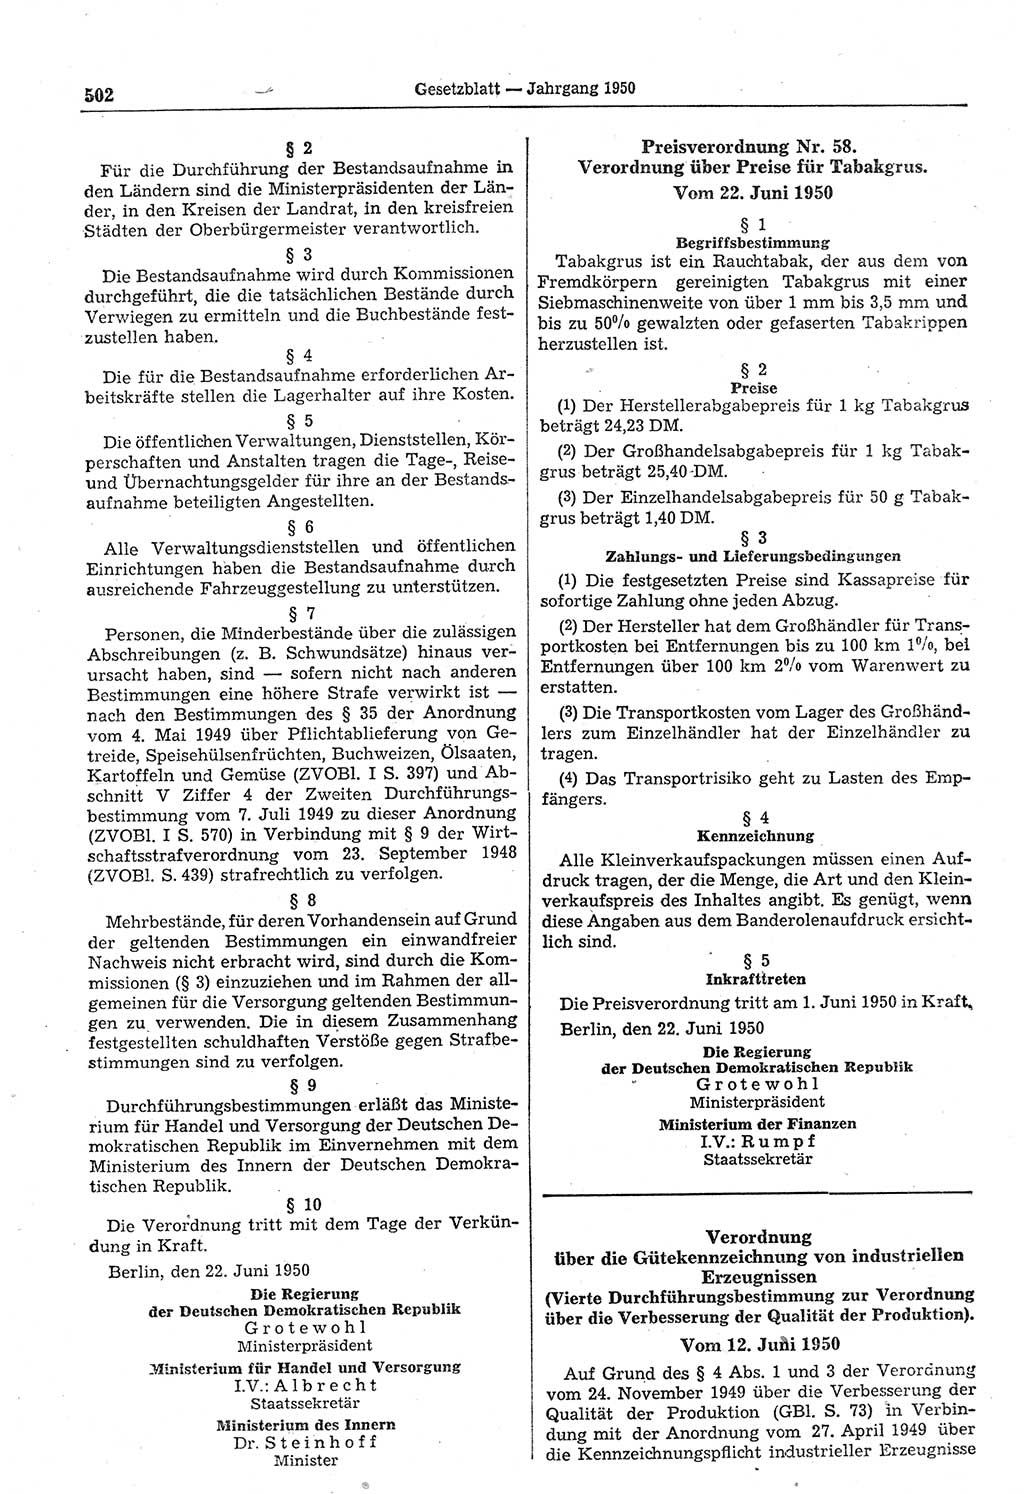 Gesetzblatt (GBl.) der Deutschen Demokratischen Republik (DDR) 1950, Seite 502 (GBl. DDR 1950, S. 502)